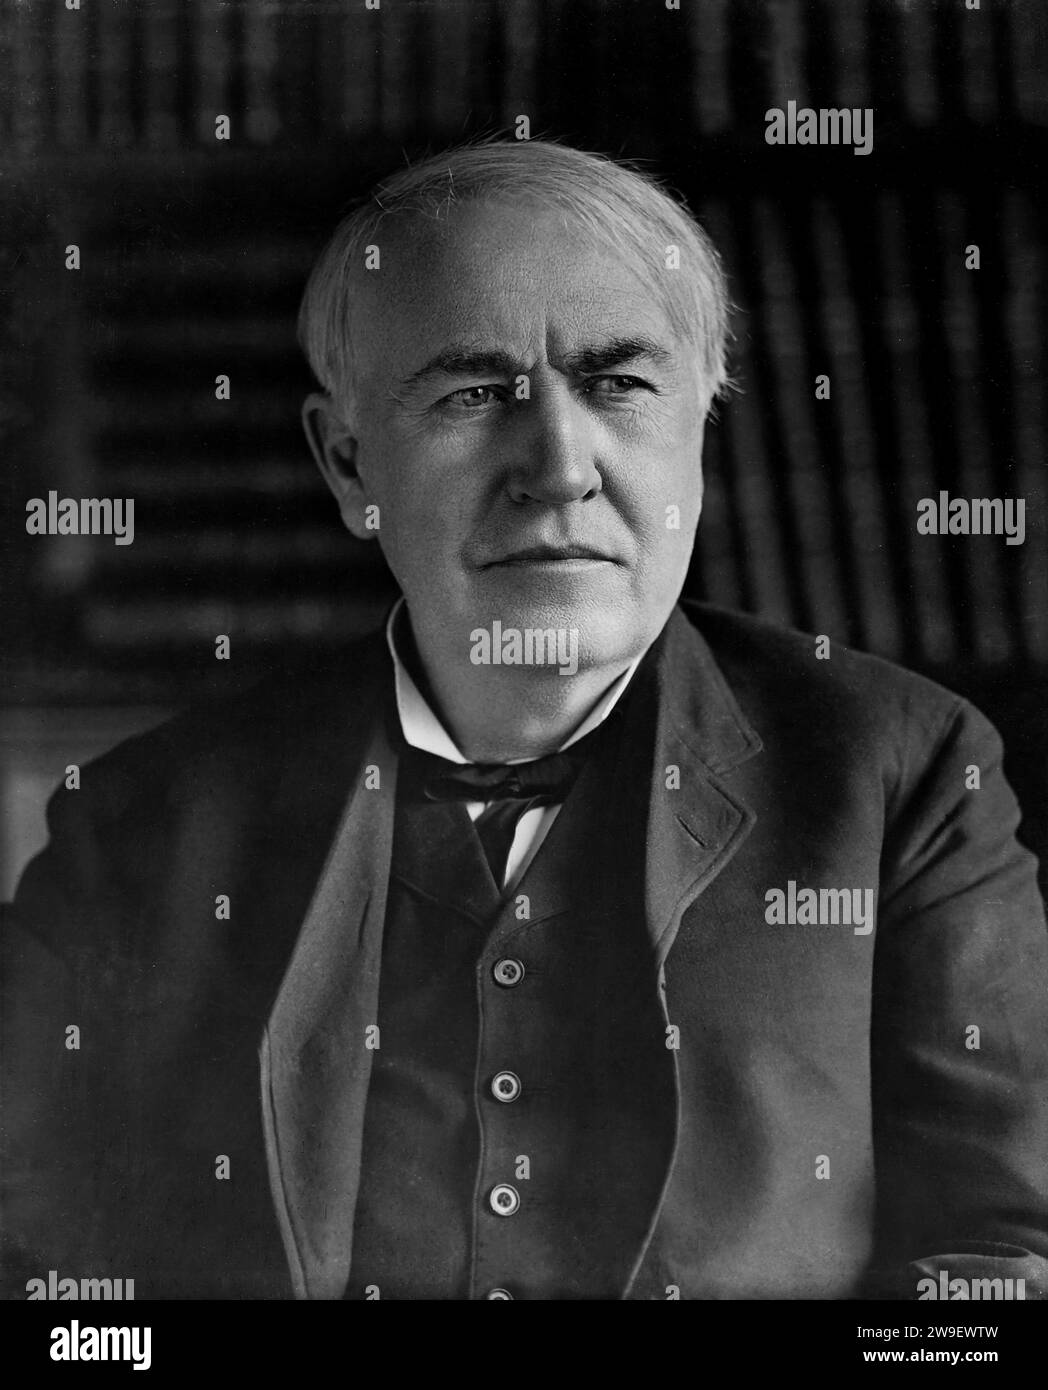 Porträt von Thomas Edison in der Building 5 Library seines West Orange Laboratory. Jahr 1911. Stockfoto